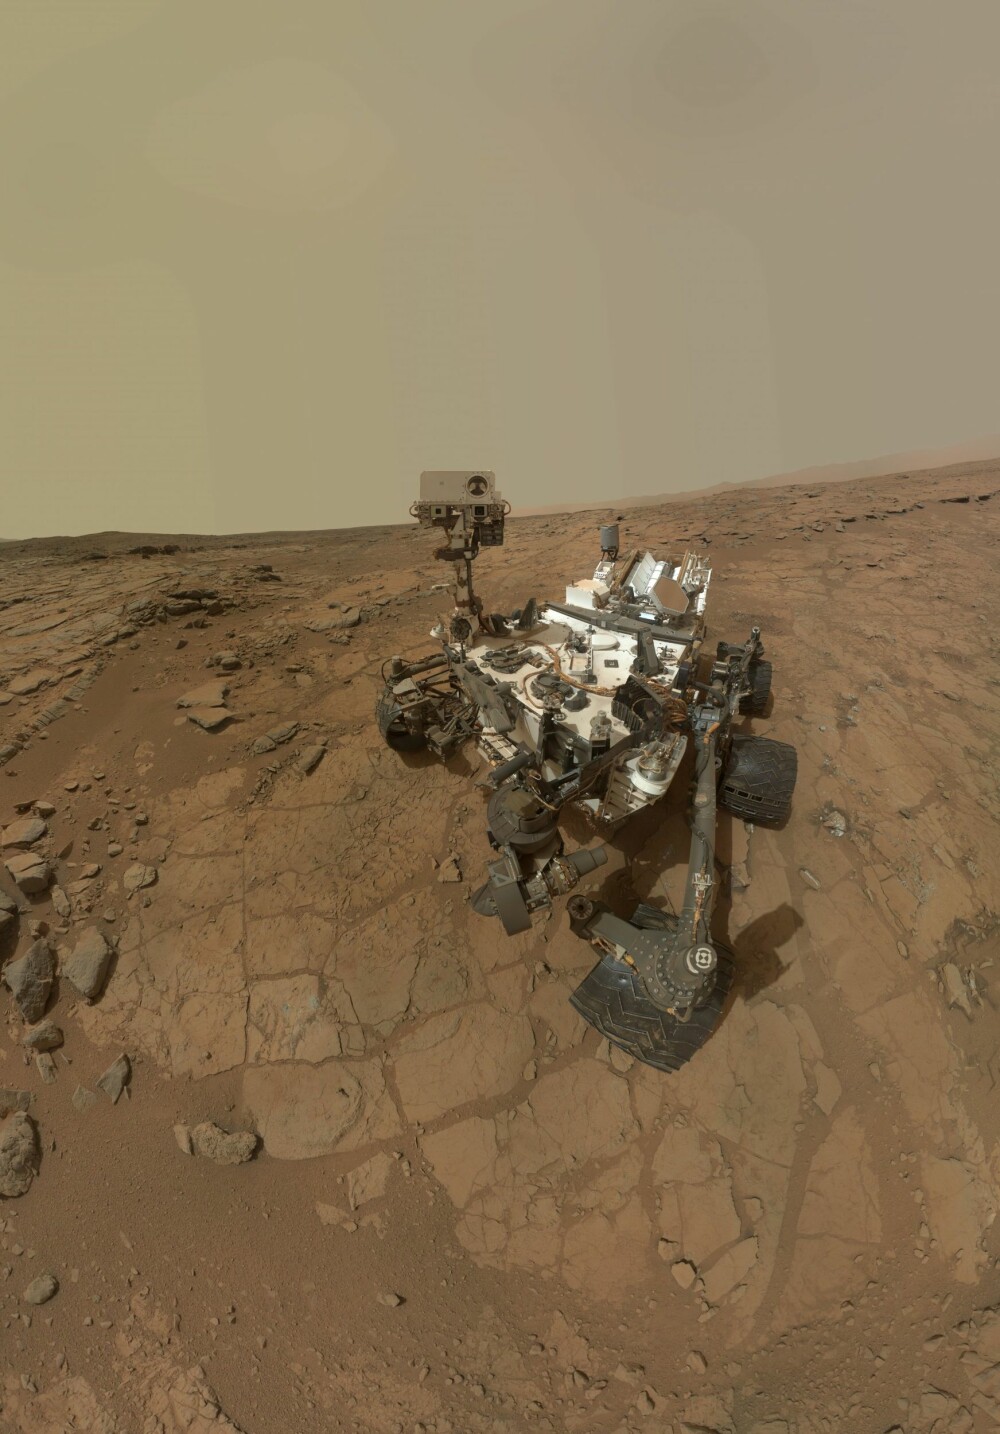 <b>MARS-SELFIE:</b> Er det liv på Mars? sang David Bowie. Etter at Mars-roboten Curiosity landet på Mars i 2012 etter å ha tilbakelagt 560 millioner kilometer, har den blant annet funnet vann under mars-overflaten, noe som kan være grunnlaget for liv. Den er også en racer til å ta selfier med kameraet på robotarmen. Ved å sy sammen flere titalls bilder kan den gi et naturtro inntrykk av hvordan den ser ut på avstand mens den kjører rundt.